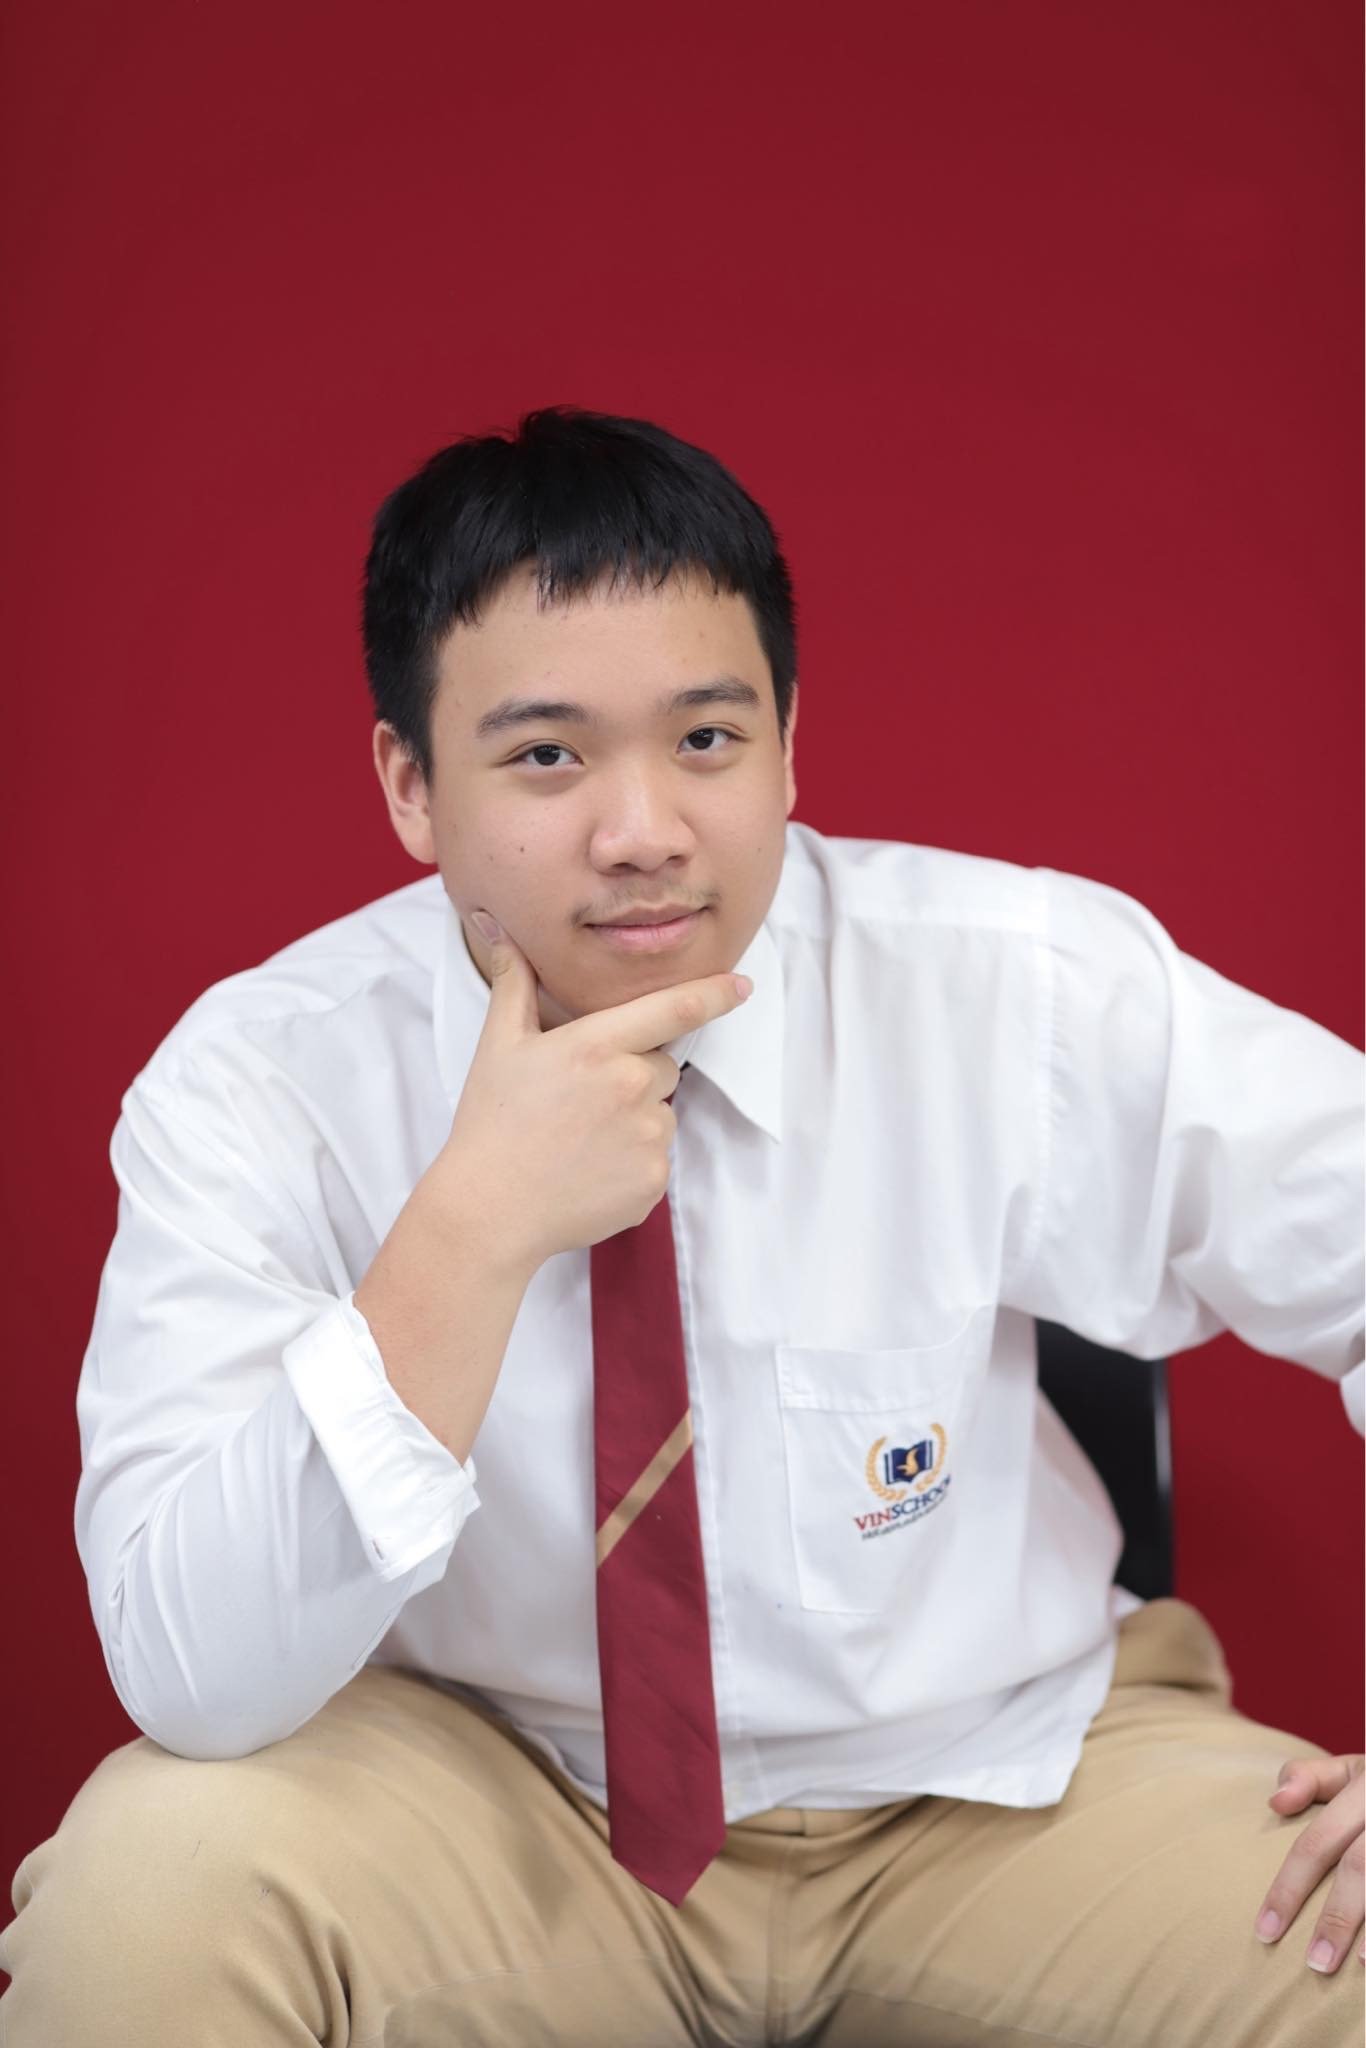 Vinser Lớp 12 Nguyễn Nam Phú xuất sắc giành học bổng toàn phần 5 năm cử nhân – thạc sĩ